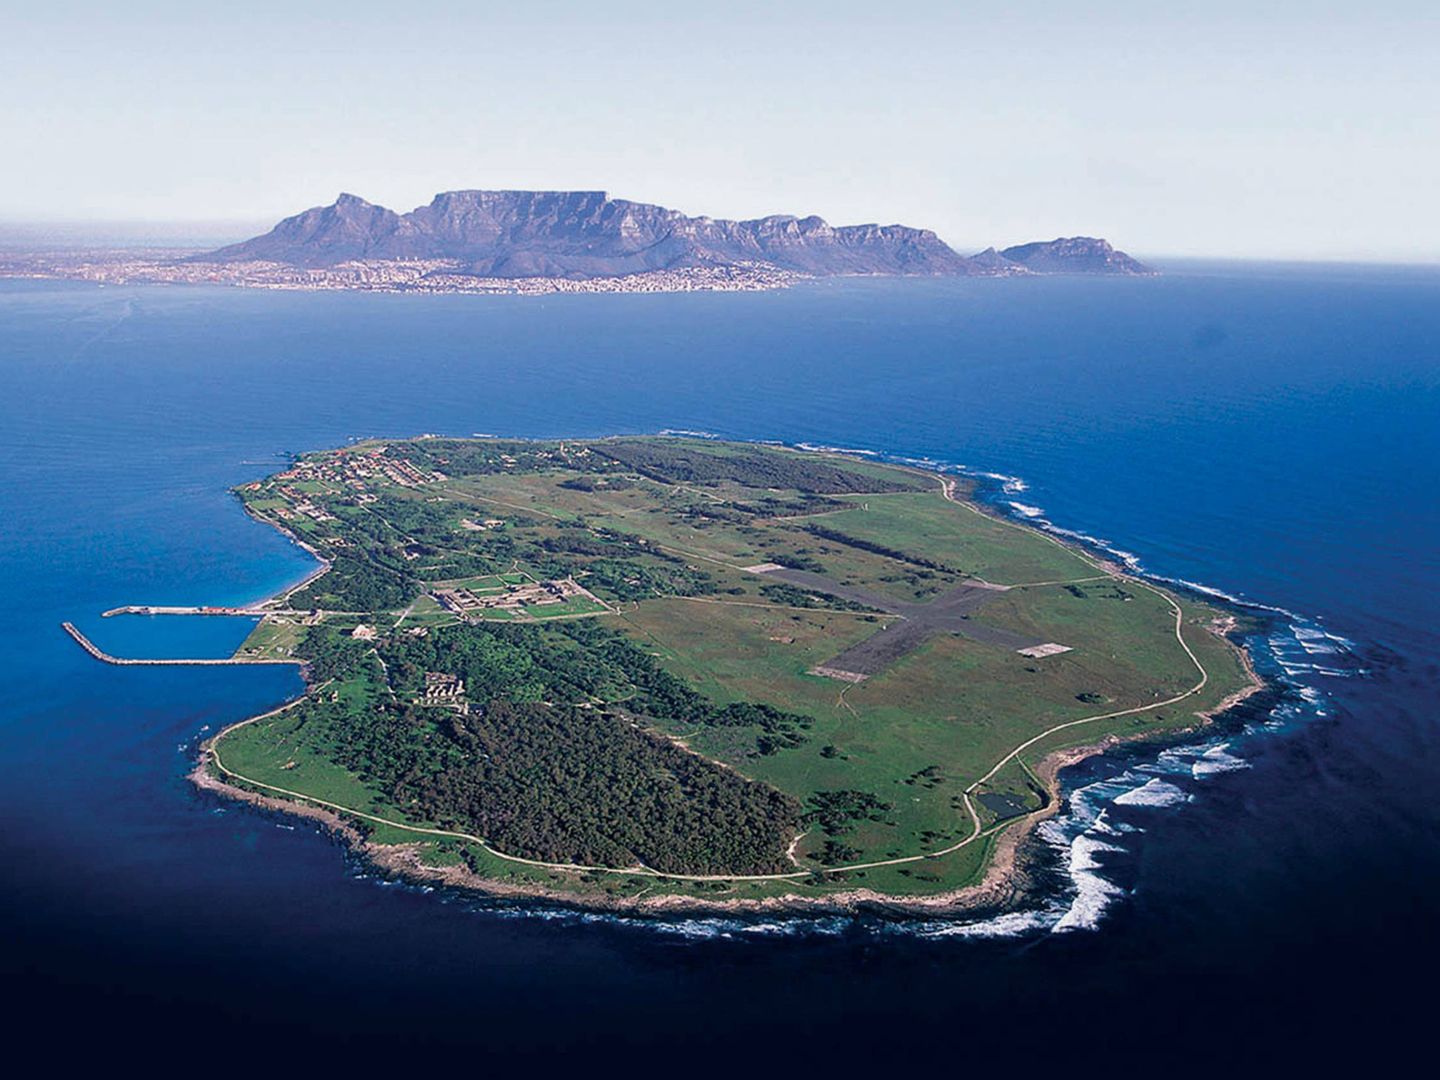 La isla de Robben a vista de pájaro. Y al fondo, la Table Mountain.